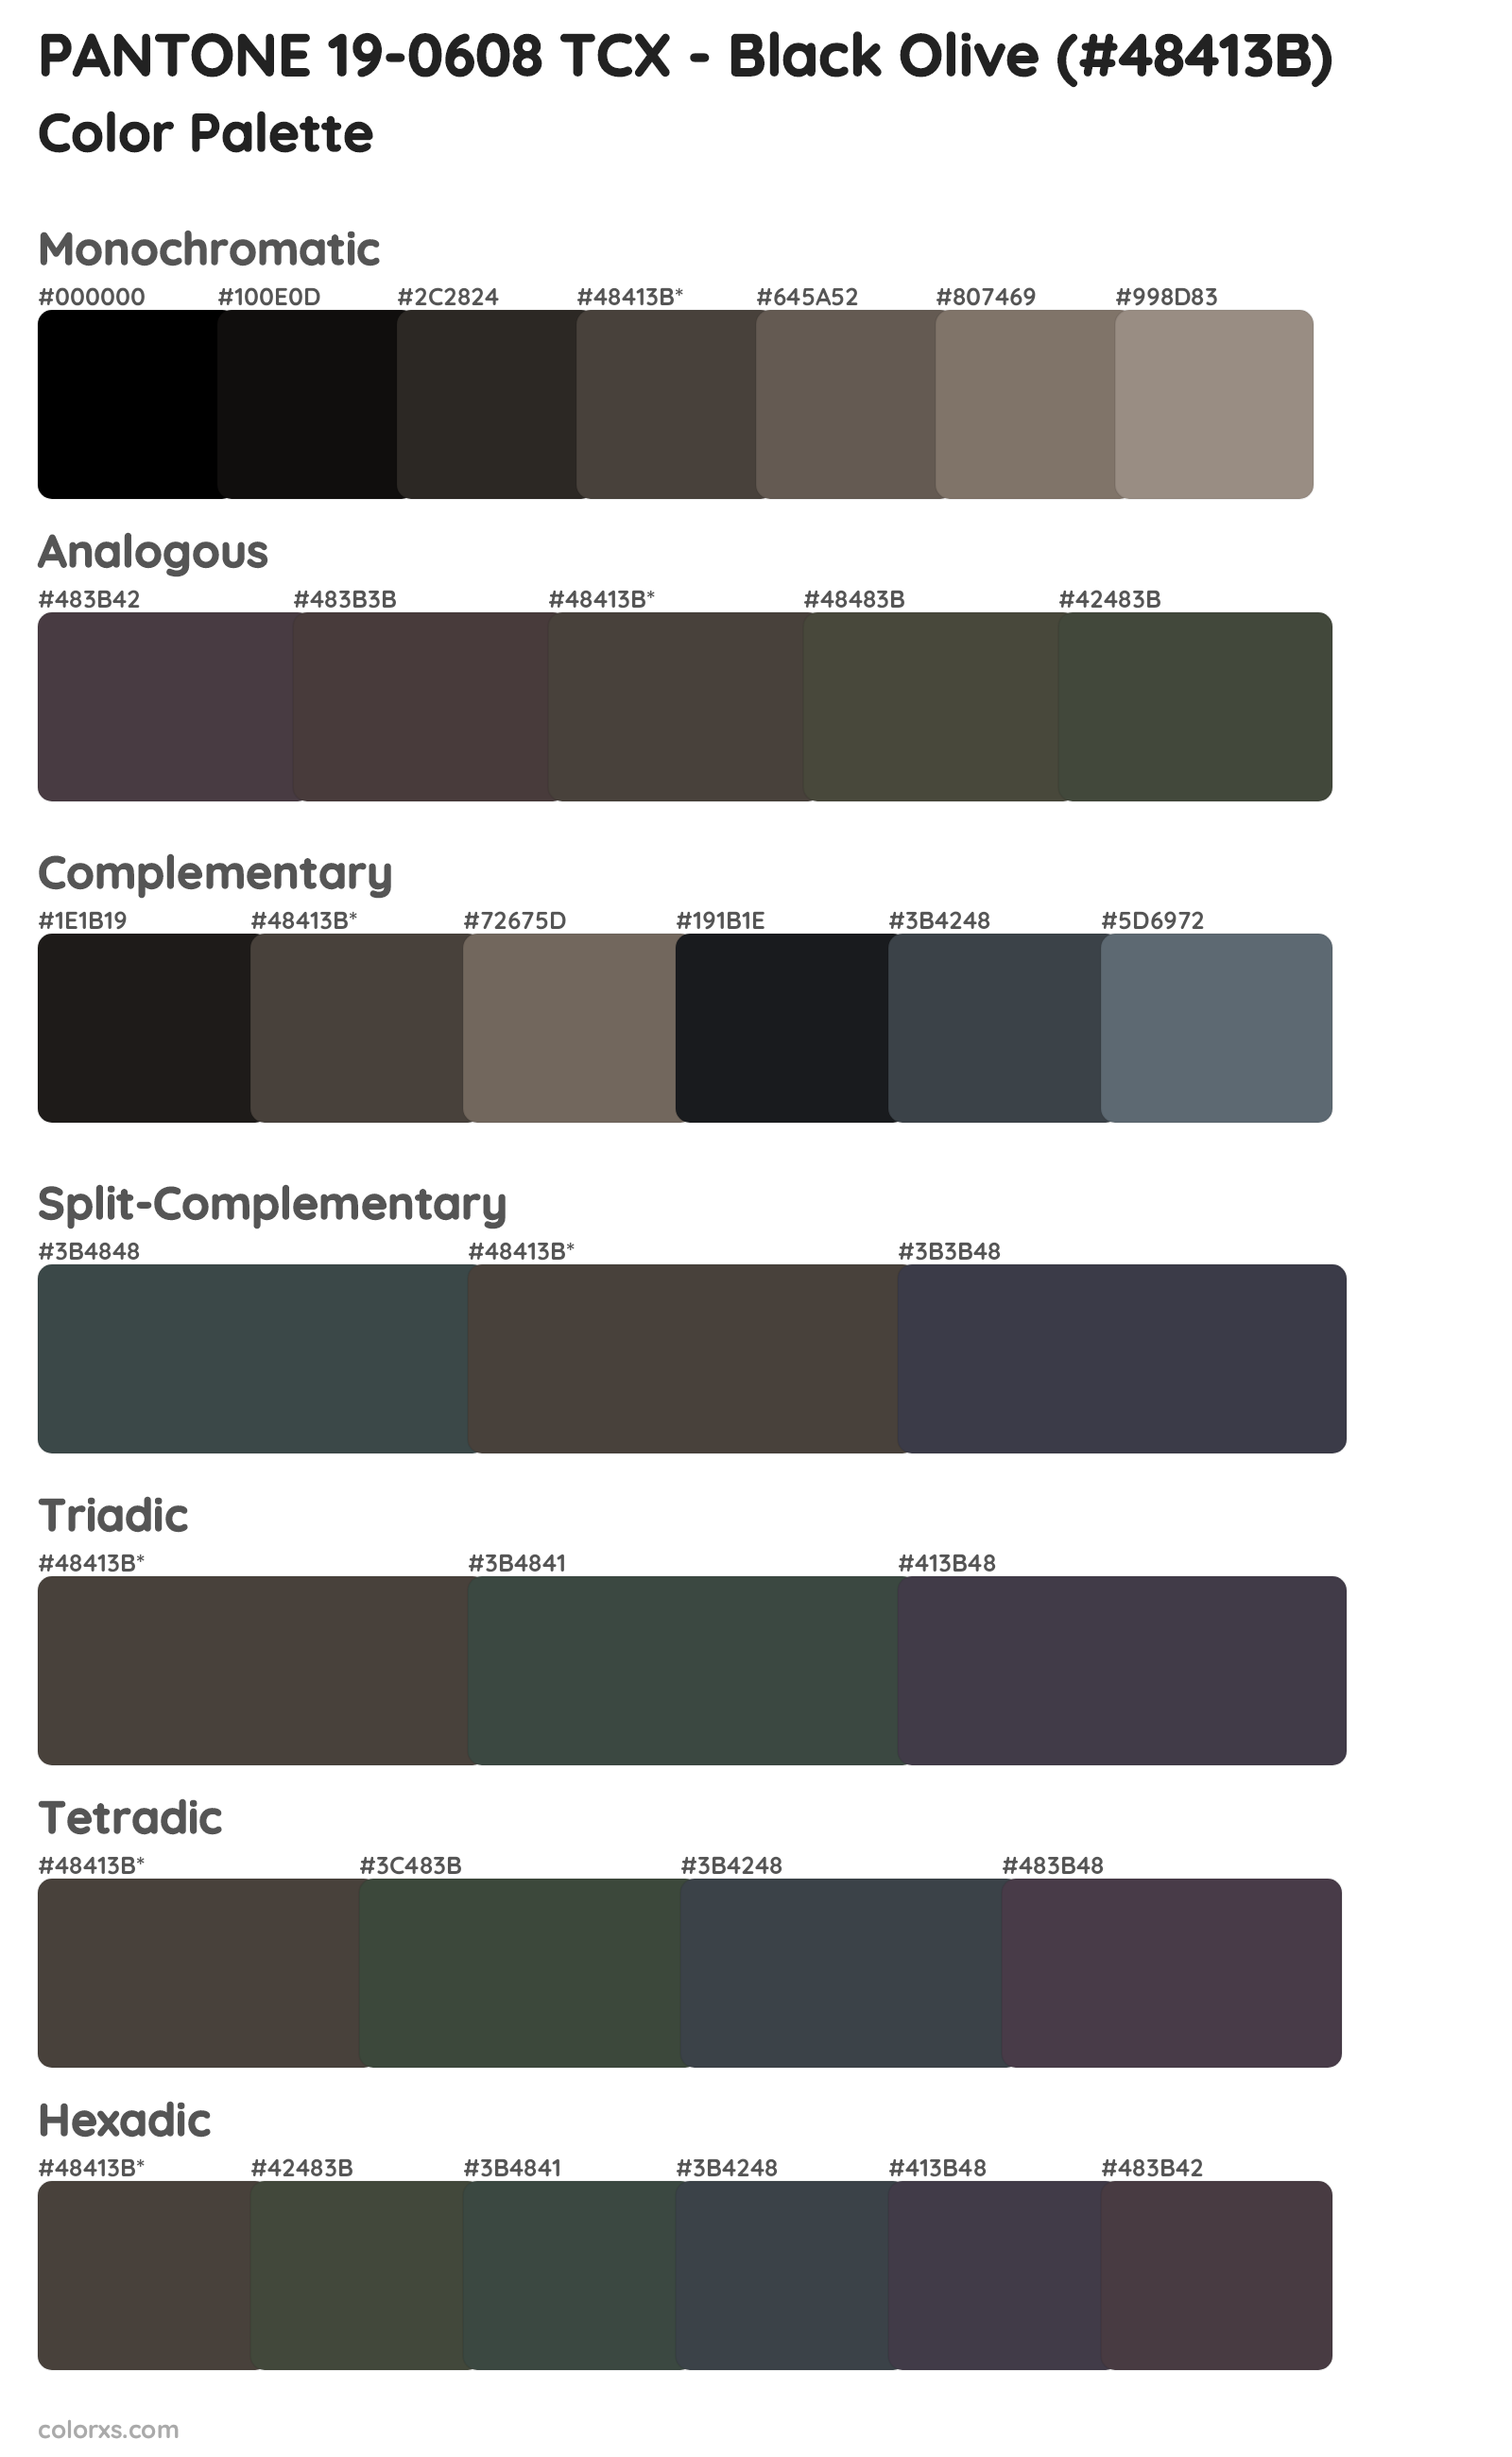 PANTONE 19-0608 TCX - Black Olive Color Scheme Palettes